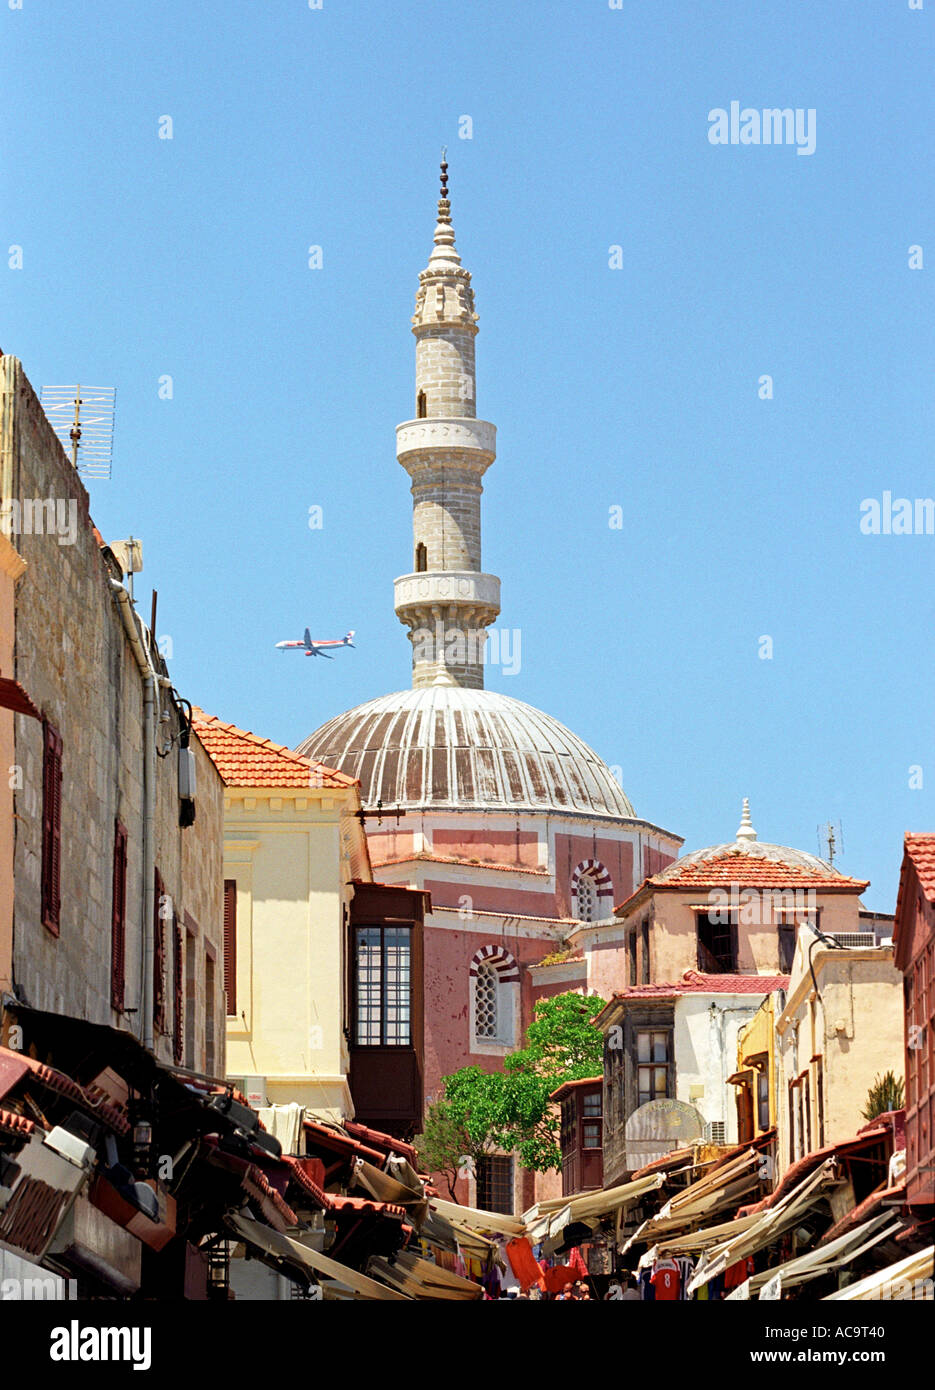 Rue commerçante, Mosquée et minaret dans la vieille ville de Rhodes avec jet airliner in sky Banque D'Images